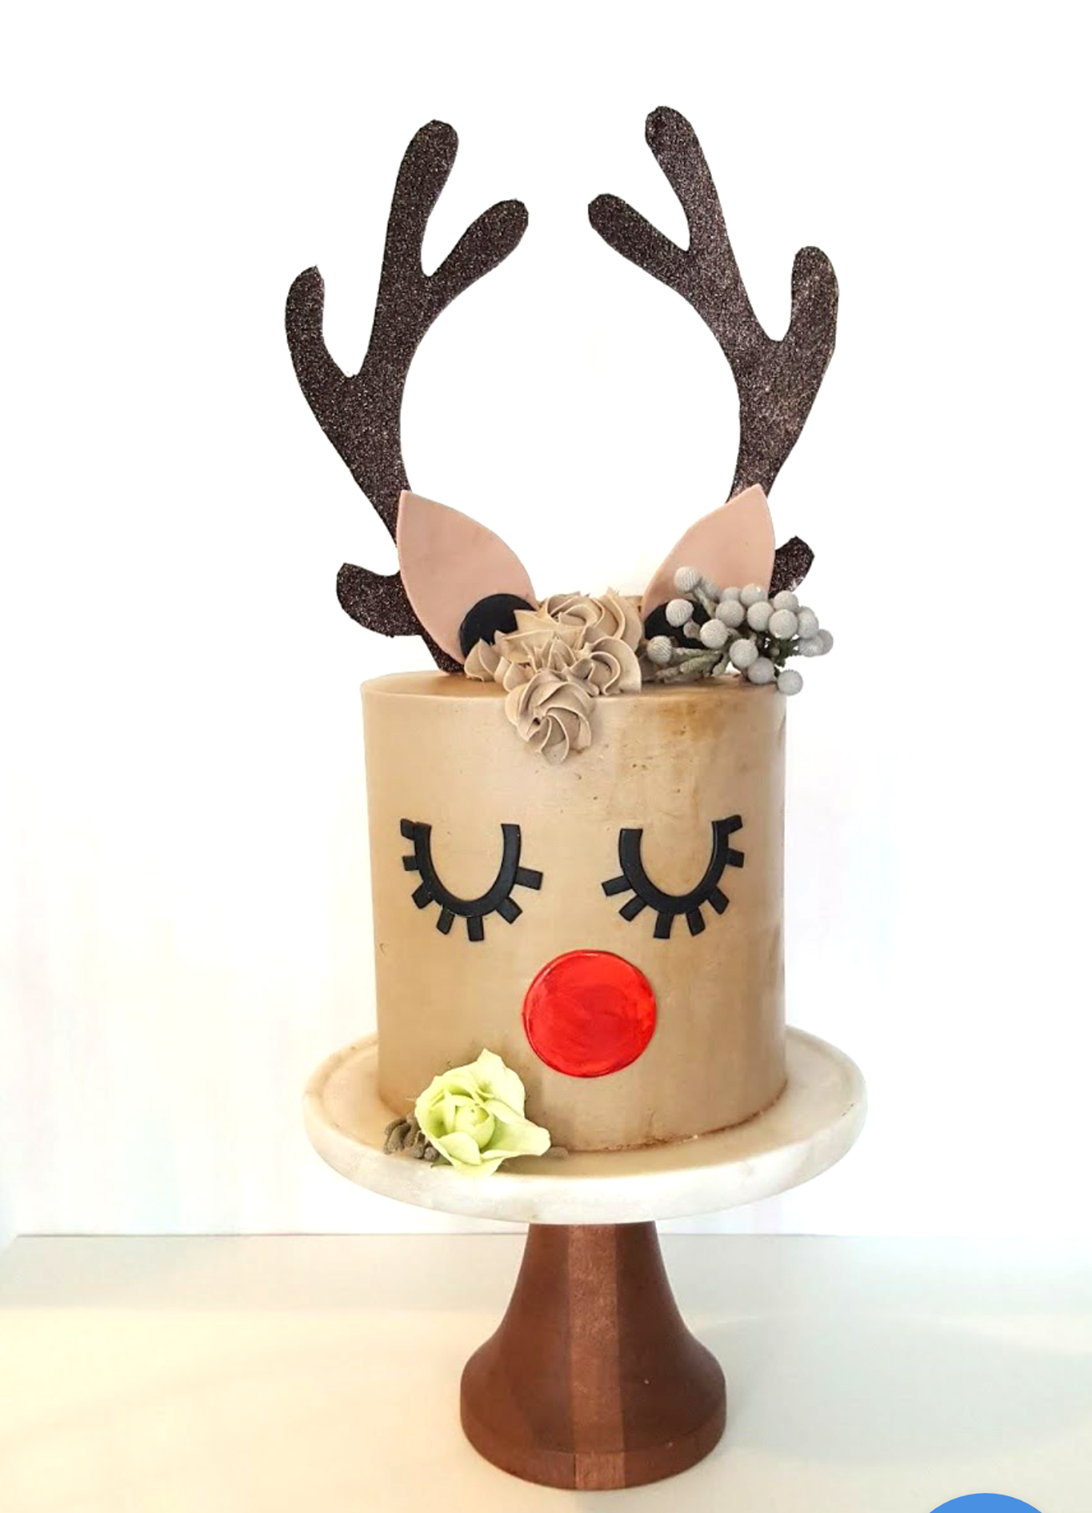 Cake Decorating Workshop, Reindeer Cake - 17 DEC 2017